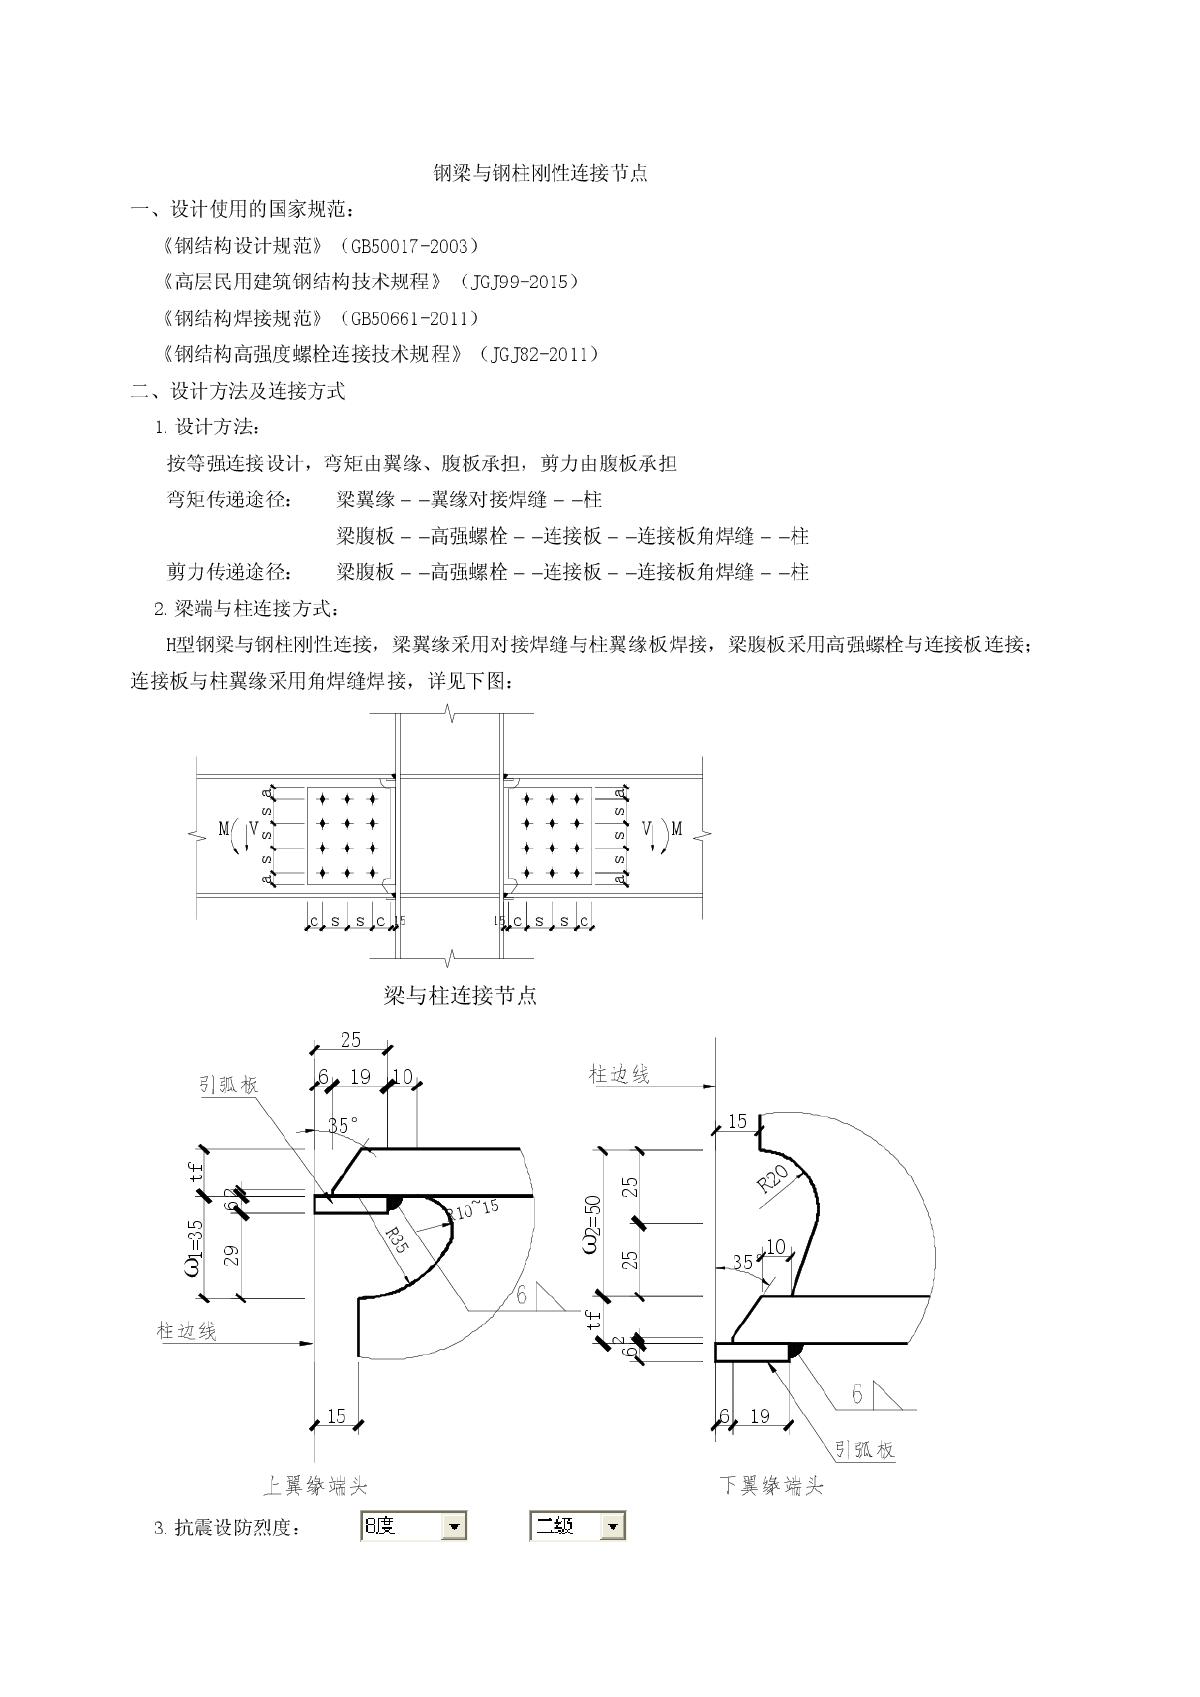 钢梁与钢柱刚性连接计算（JGJ99-2015应用系列）